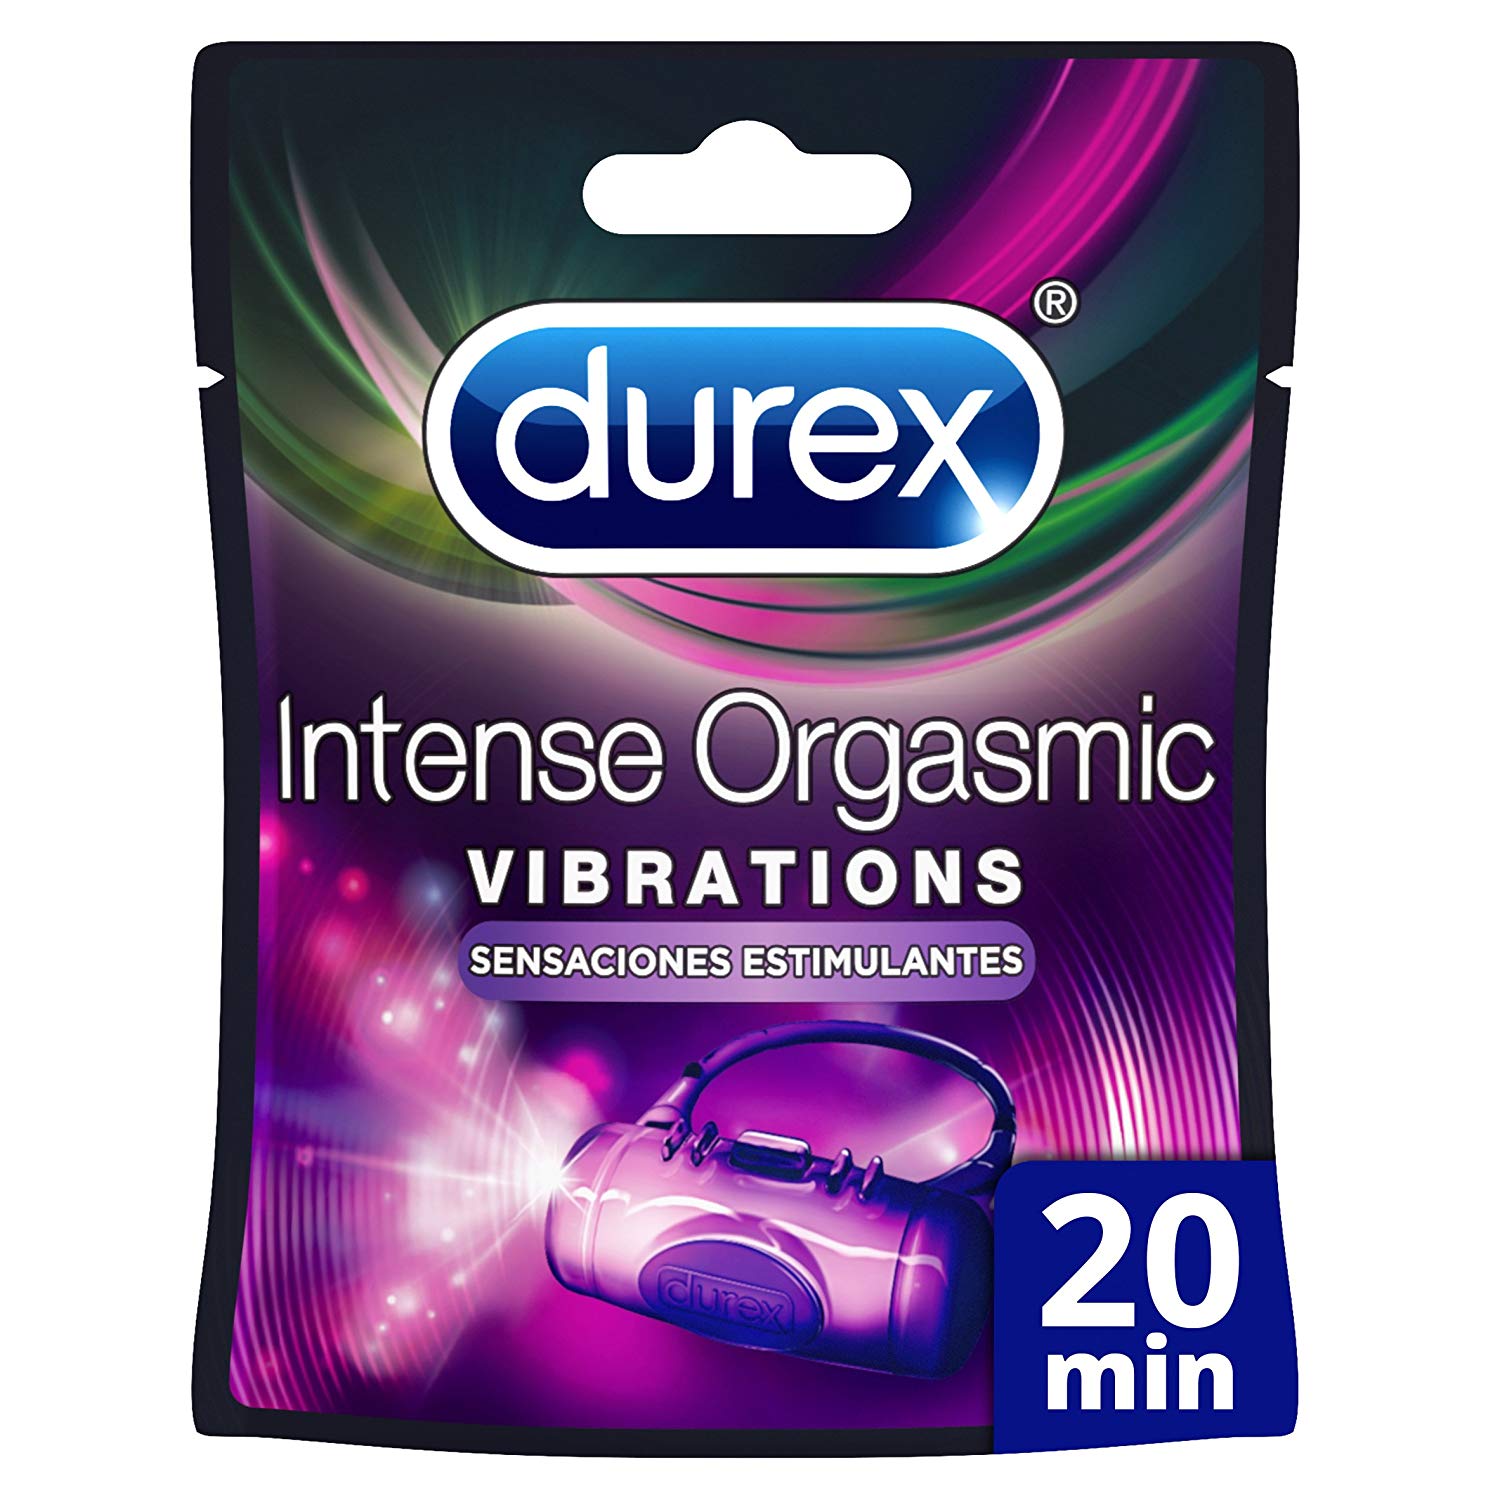 Anillo vibrador Durex Intense Orgasmic Vibrations solo 6,7€